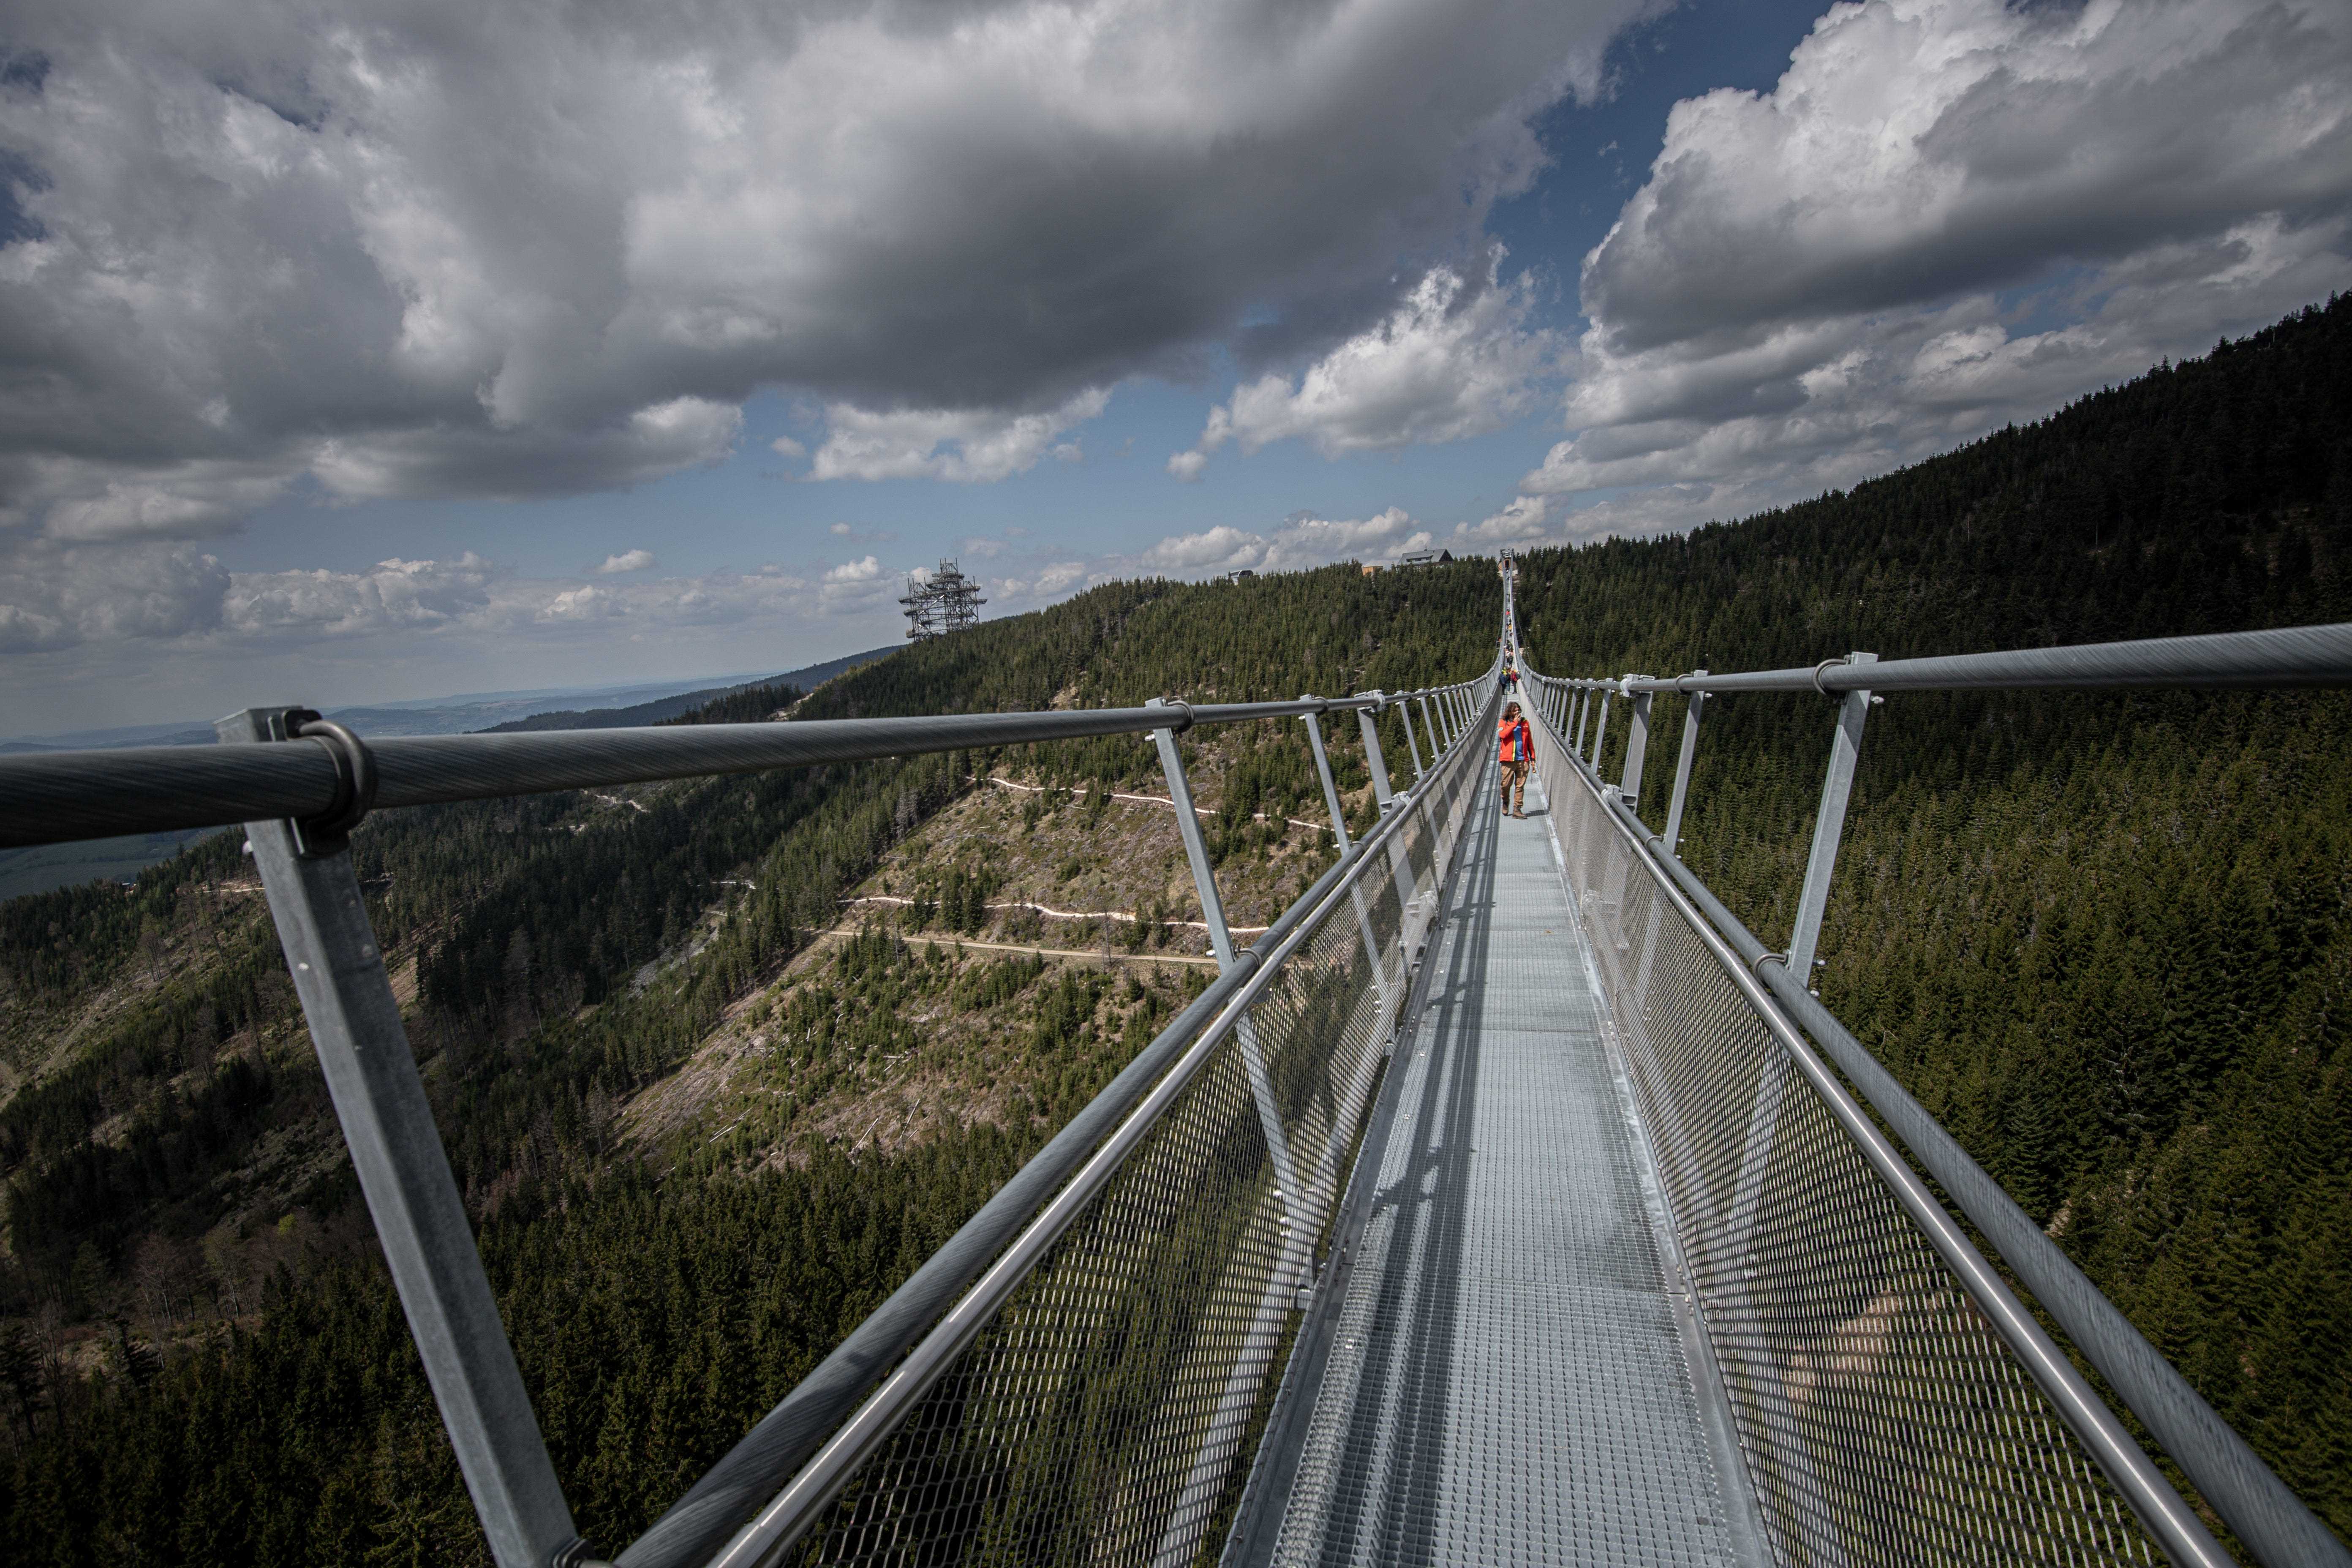 Sky Bridge 721 in Tschechien, die längste Fußgänger-Hängebrücke der Welt